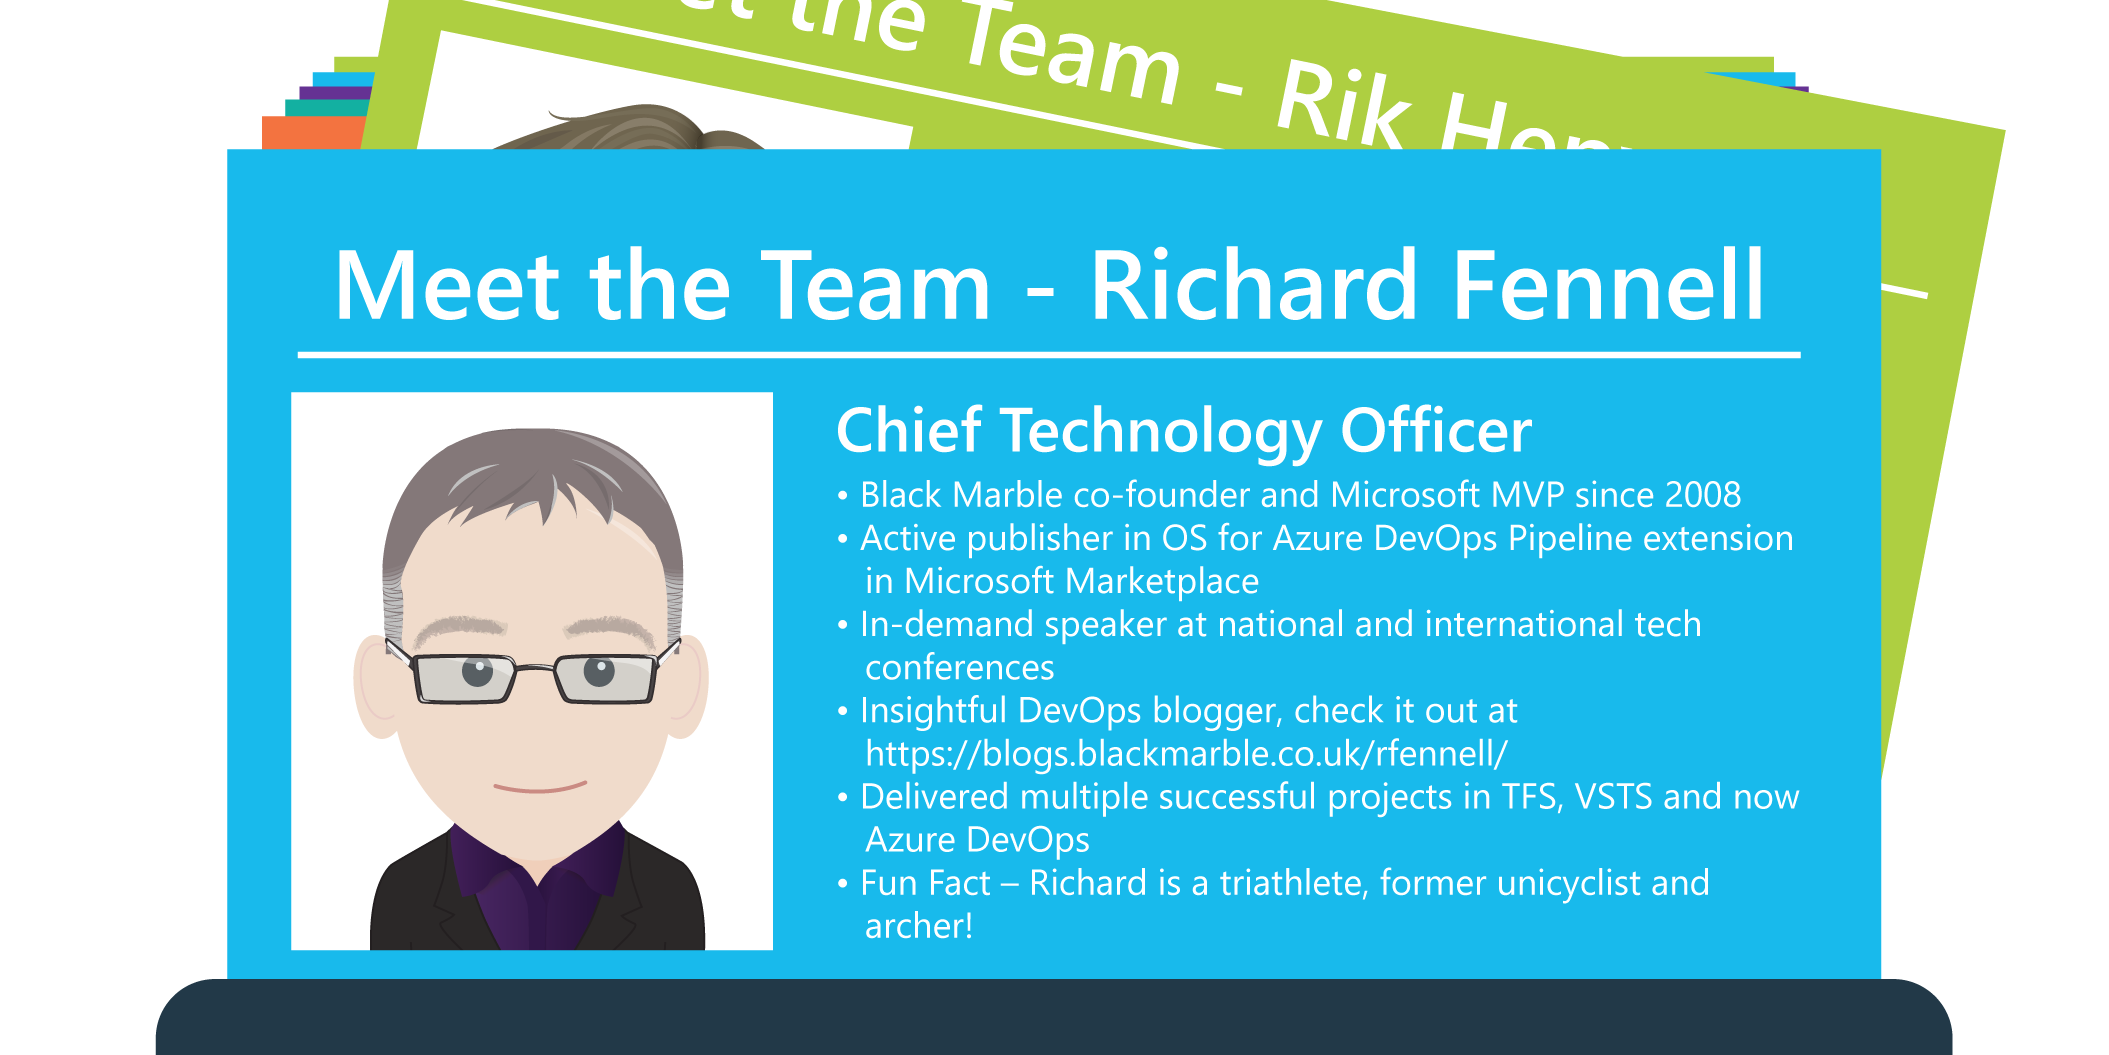 Meet the team - Richard